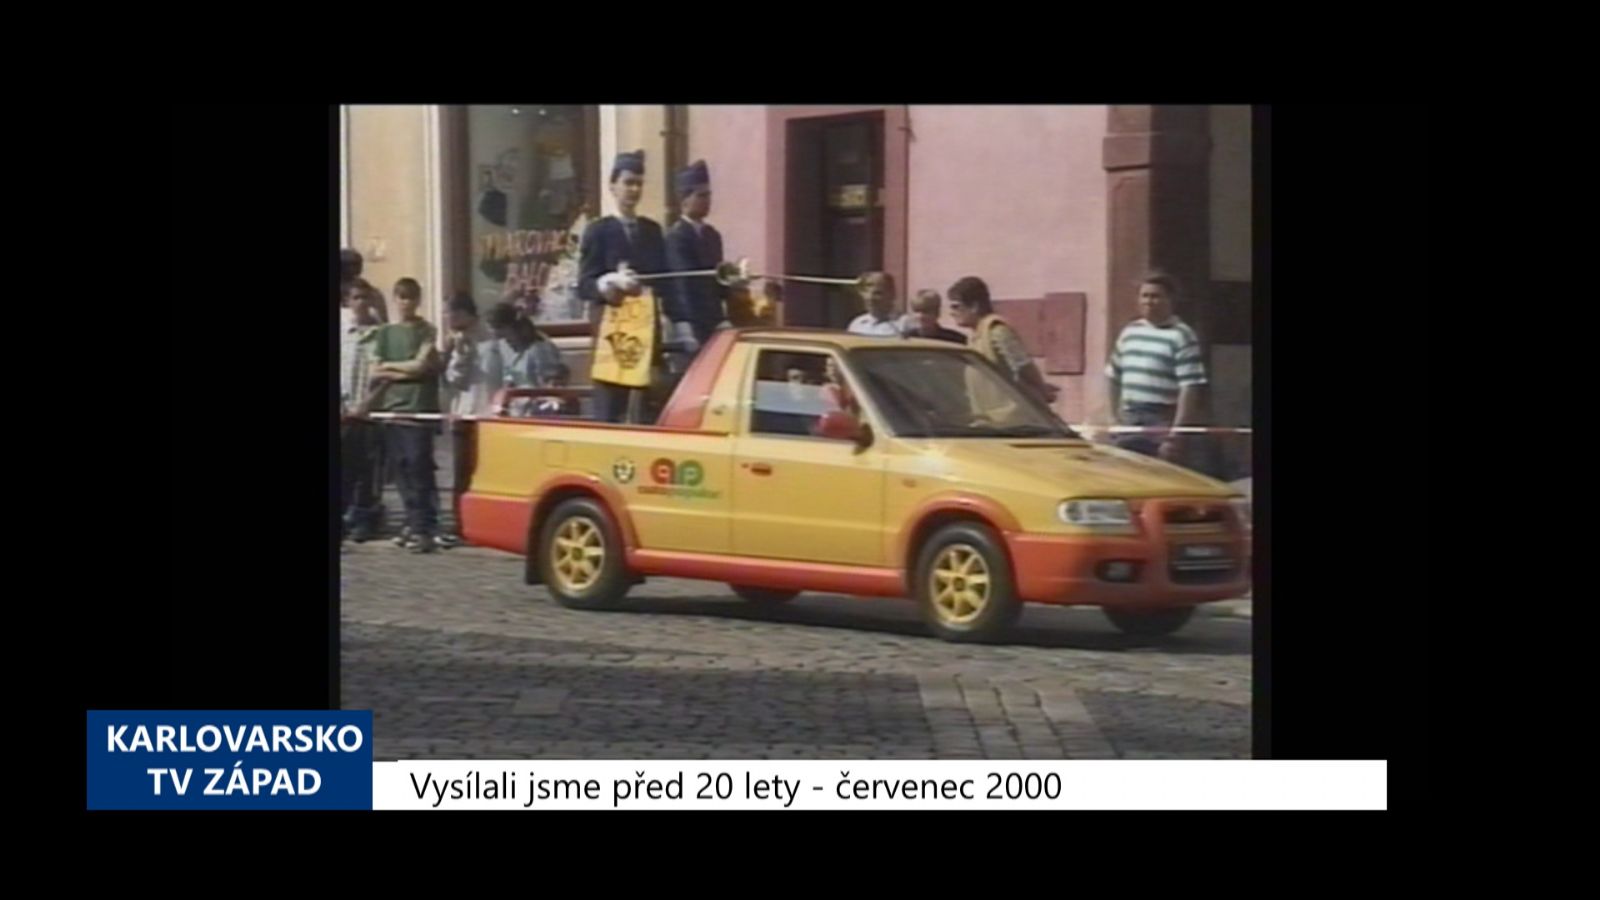 2000 – Cheb: Festival FIJO opět slavil úspěch (TV Západ)